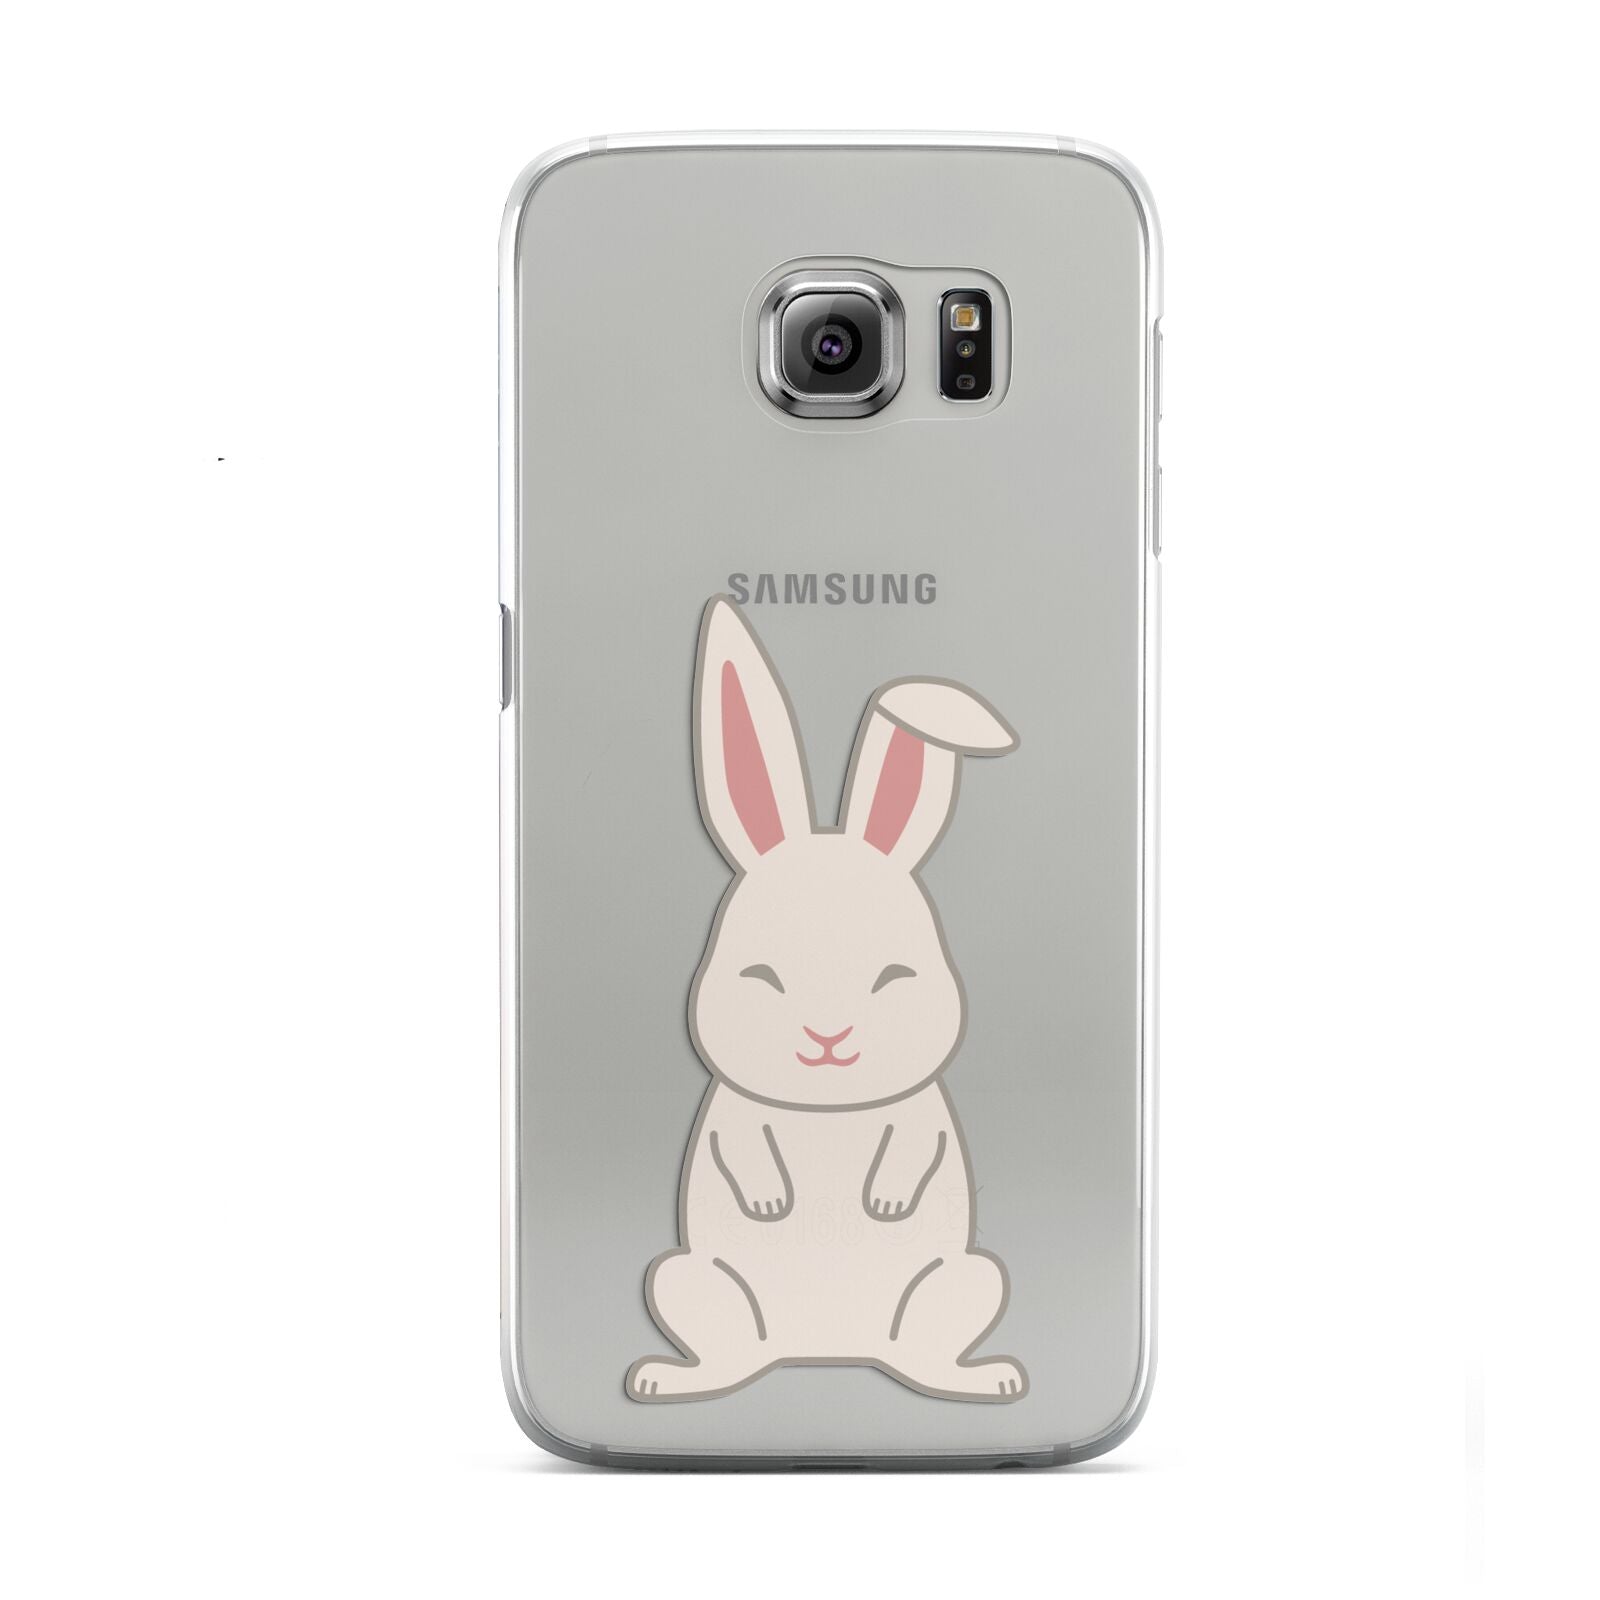 Bunny Samsung Galaxy S6 Case